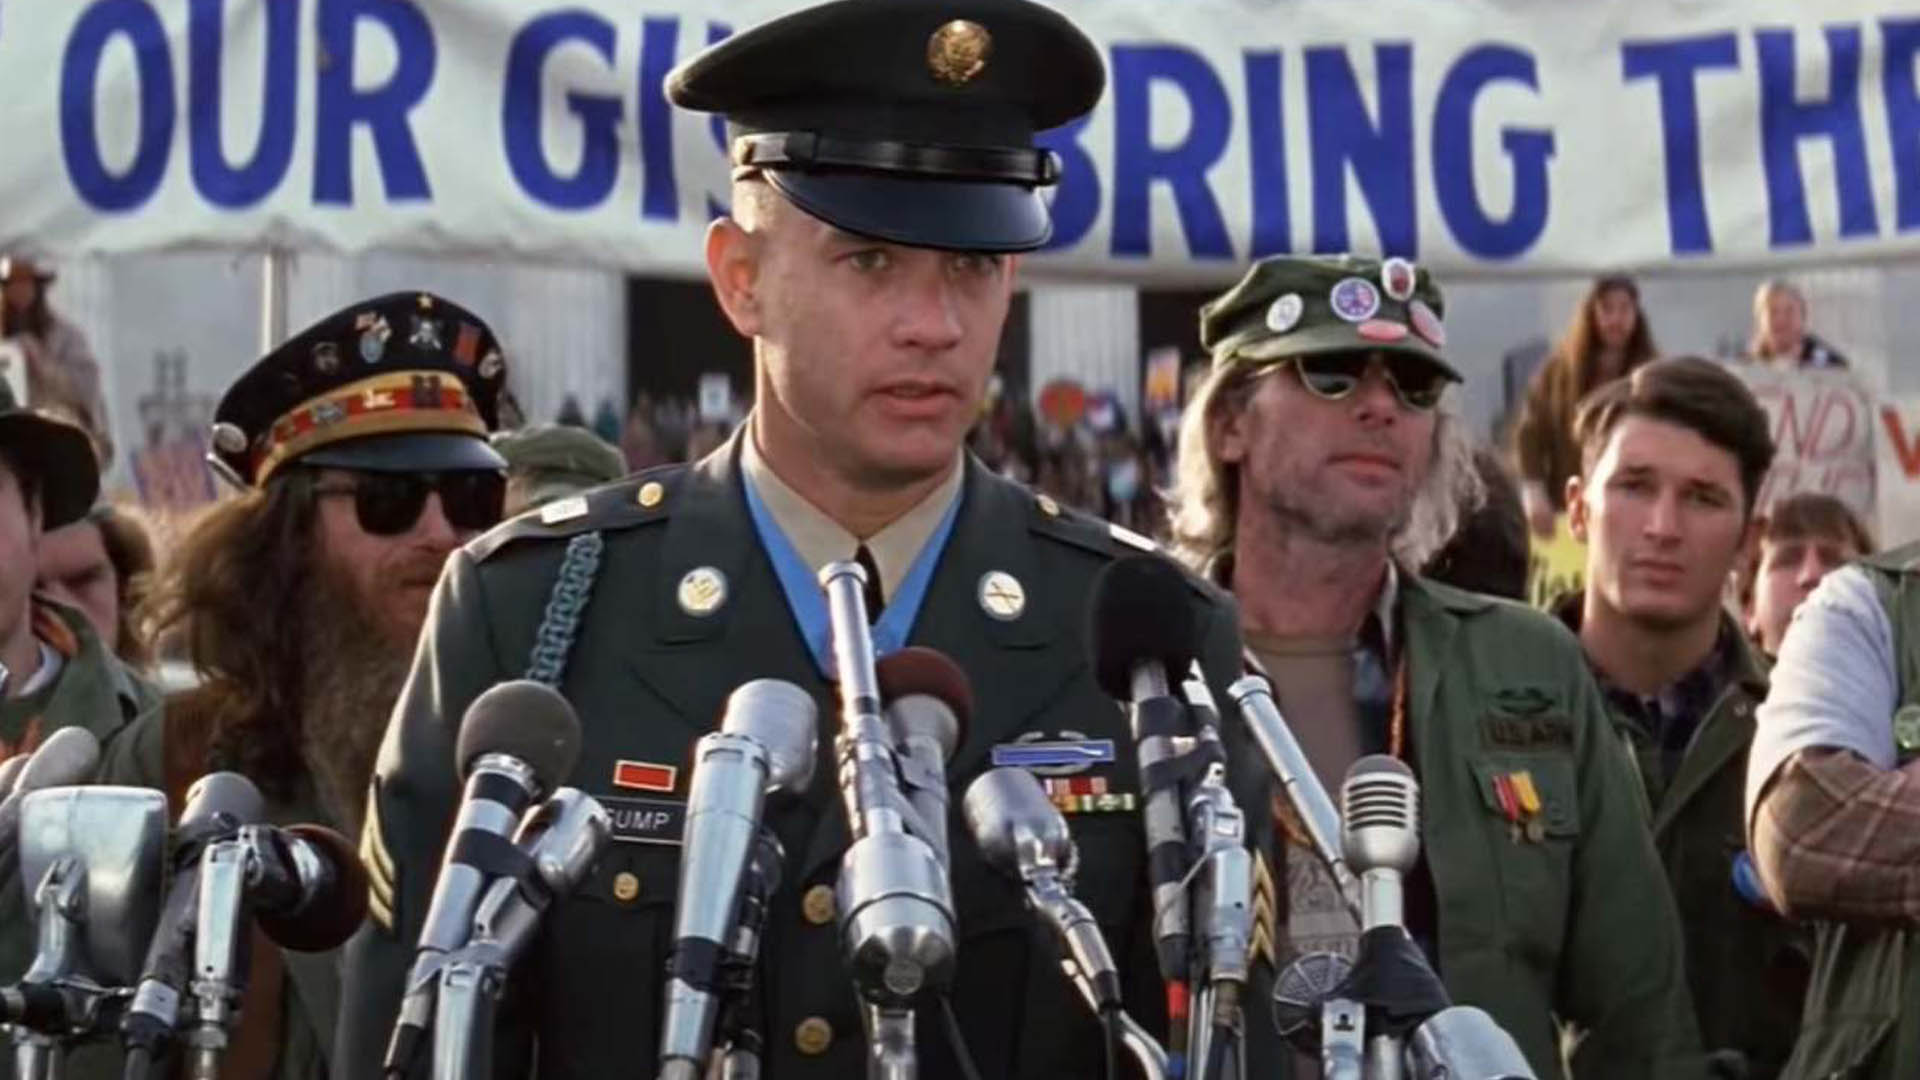 Forrest Gump's speech about the Vietnam War movie Forrest Gump